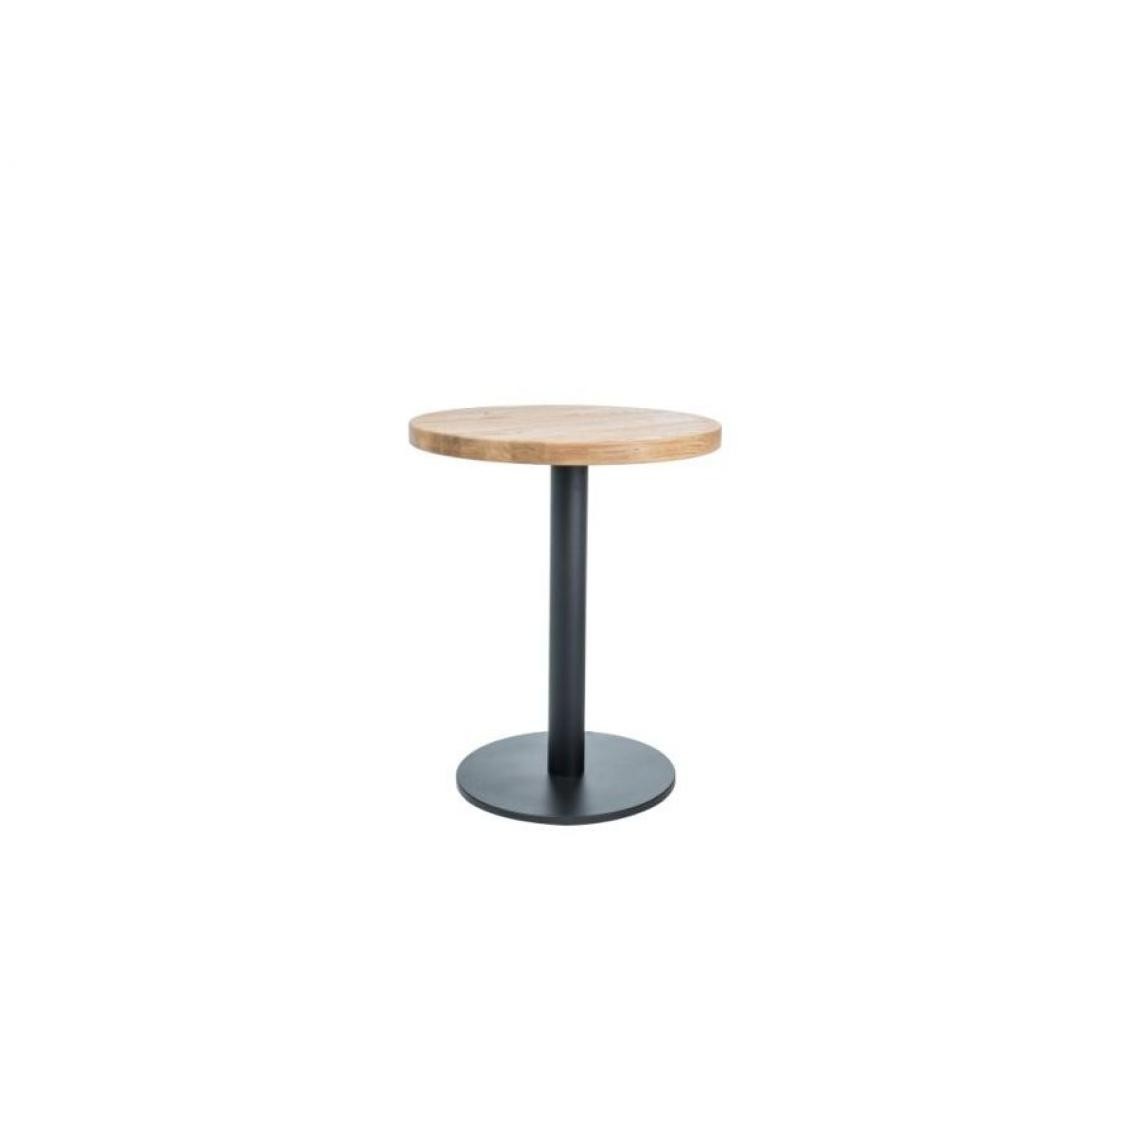 Hucoco - PURLY - Table ronde avec un piètement en métal - 80x80x76 cm - Plateau en bois massif - Table fixe - Style loft - Chêne - Tables à manger